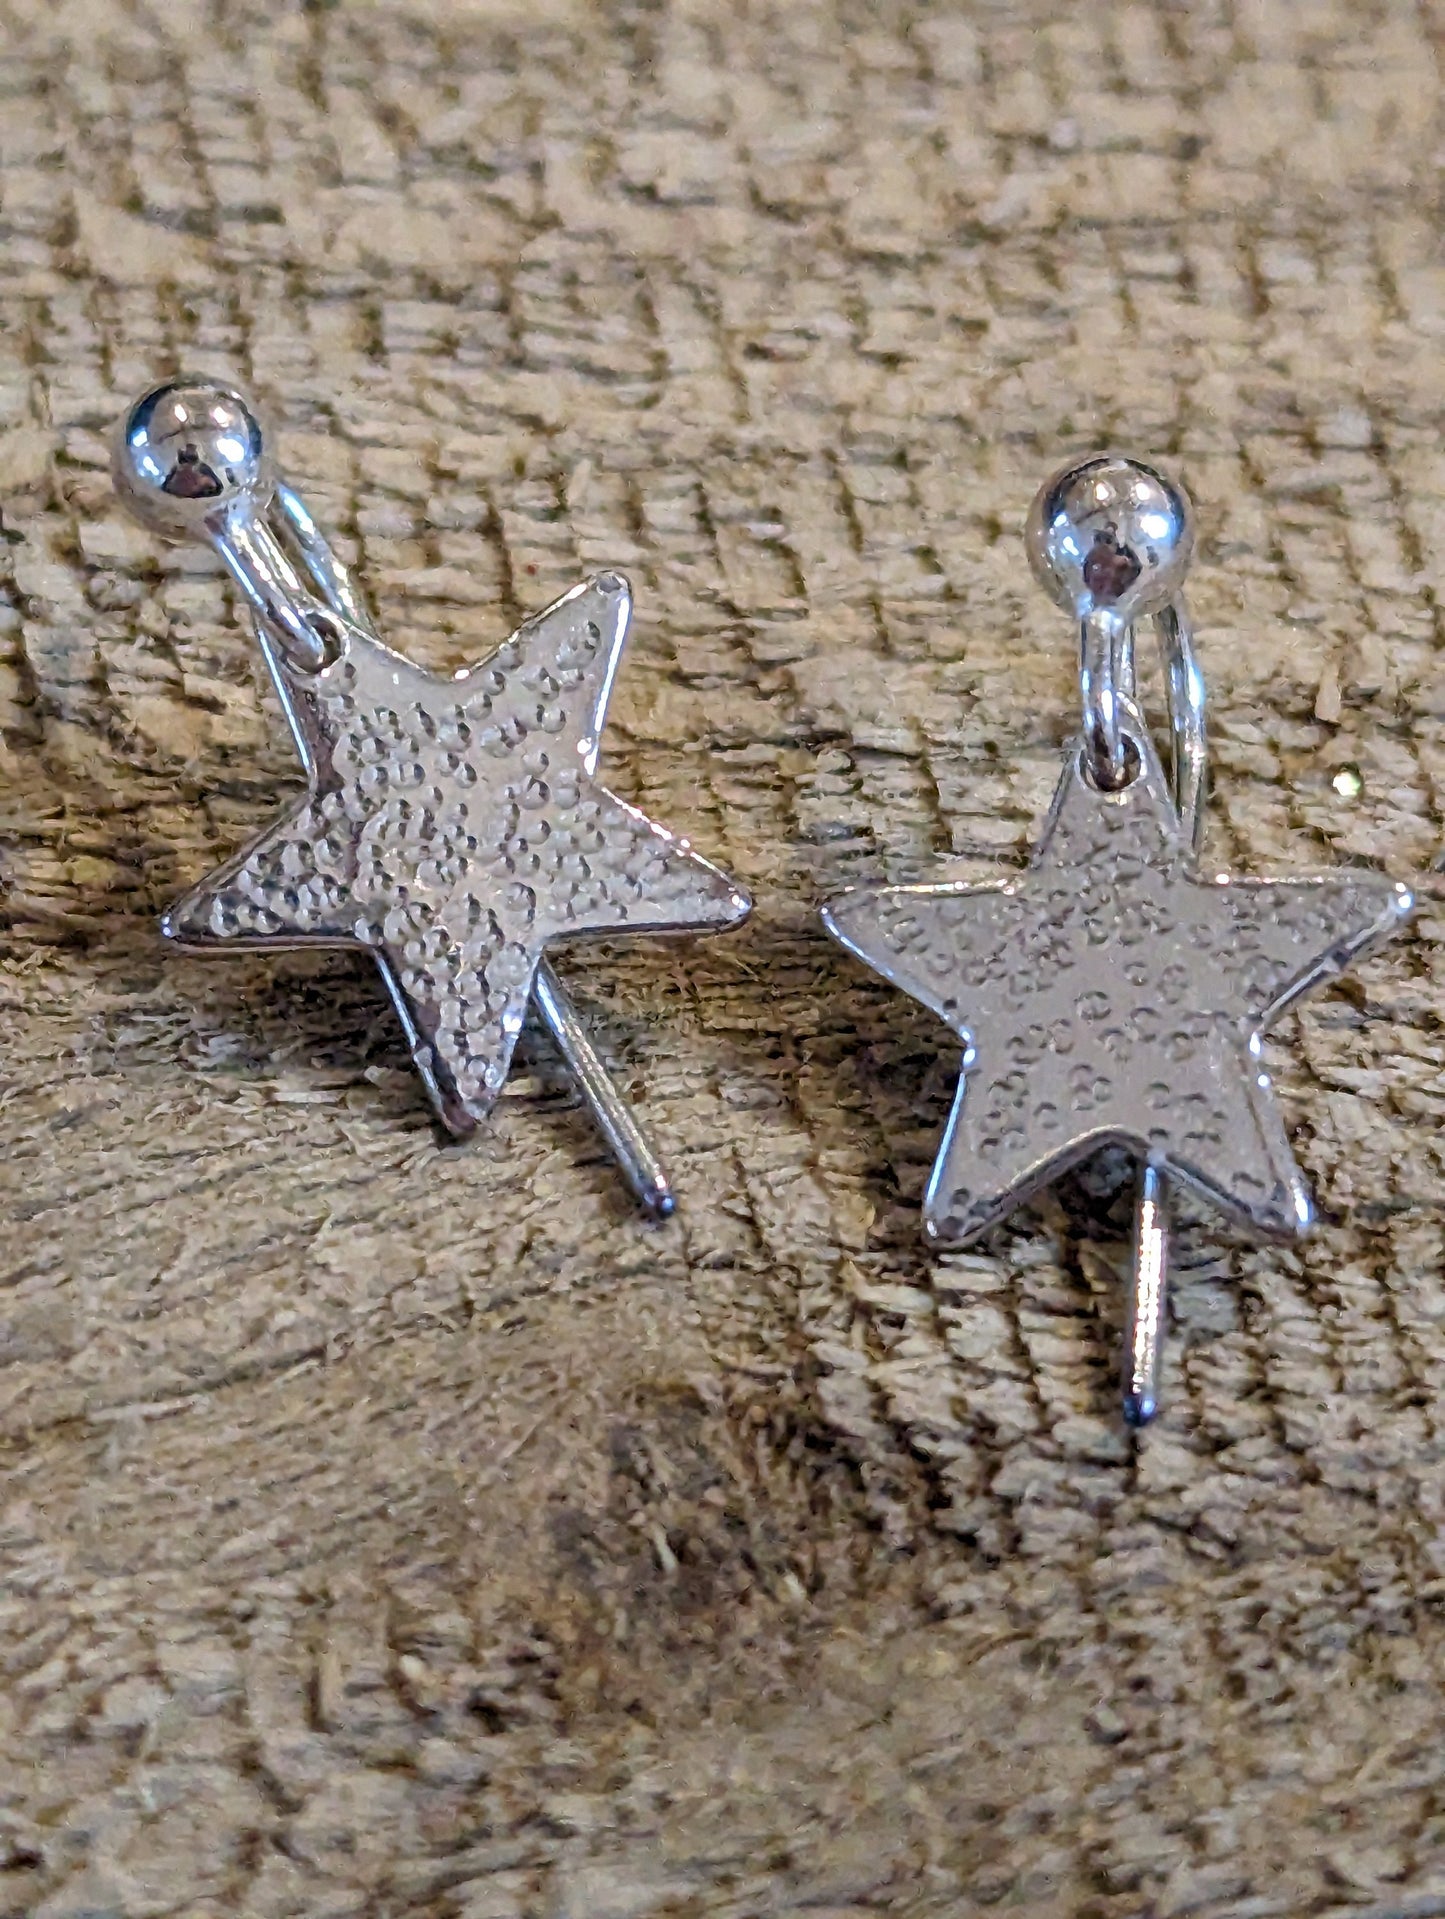 Handmade Hammered Sterling Silver Star Earrings